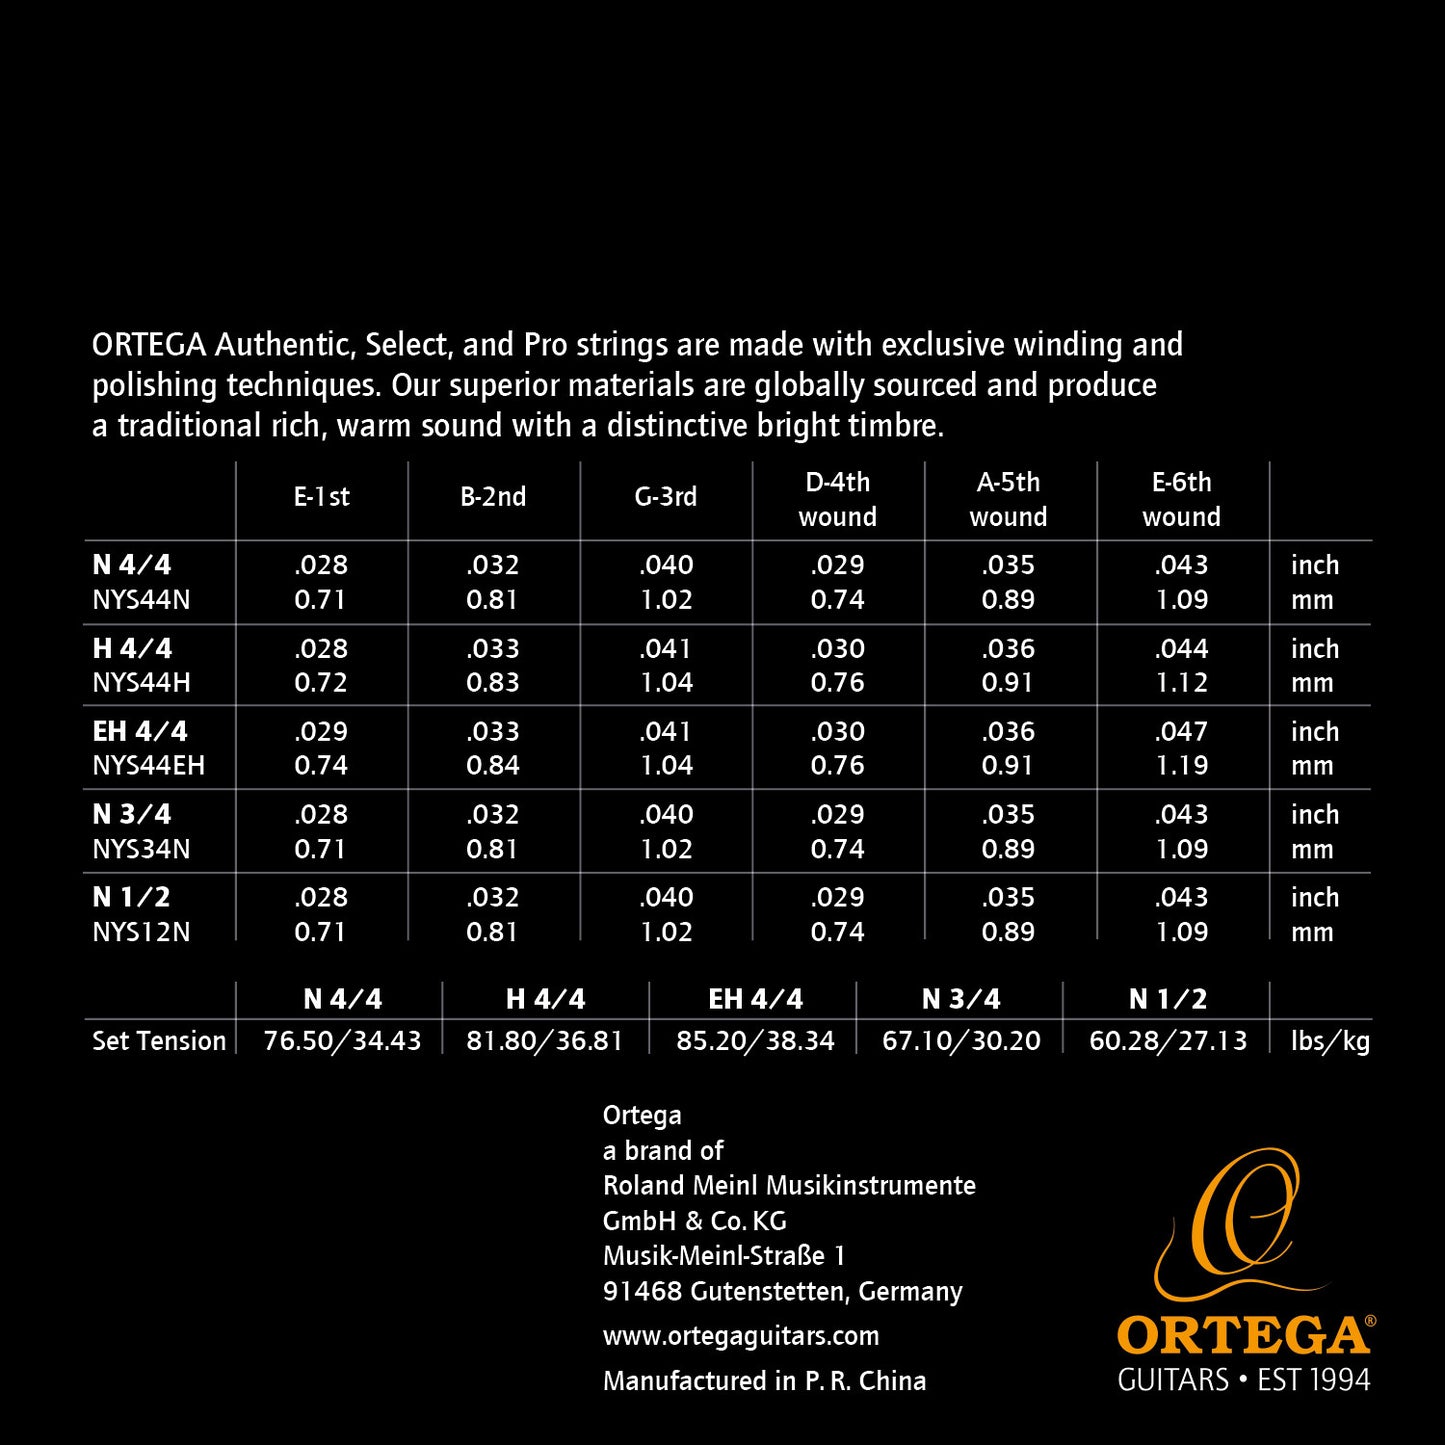 Ortega Custom Made Coated Classical Guitar Strings - Regular Nylon Normal Tension